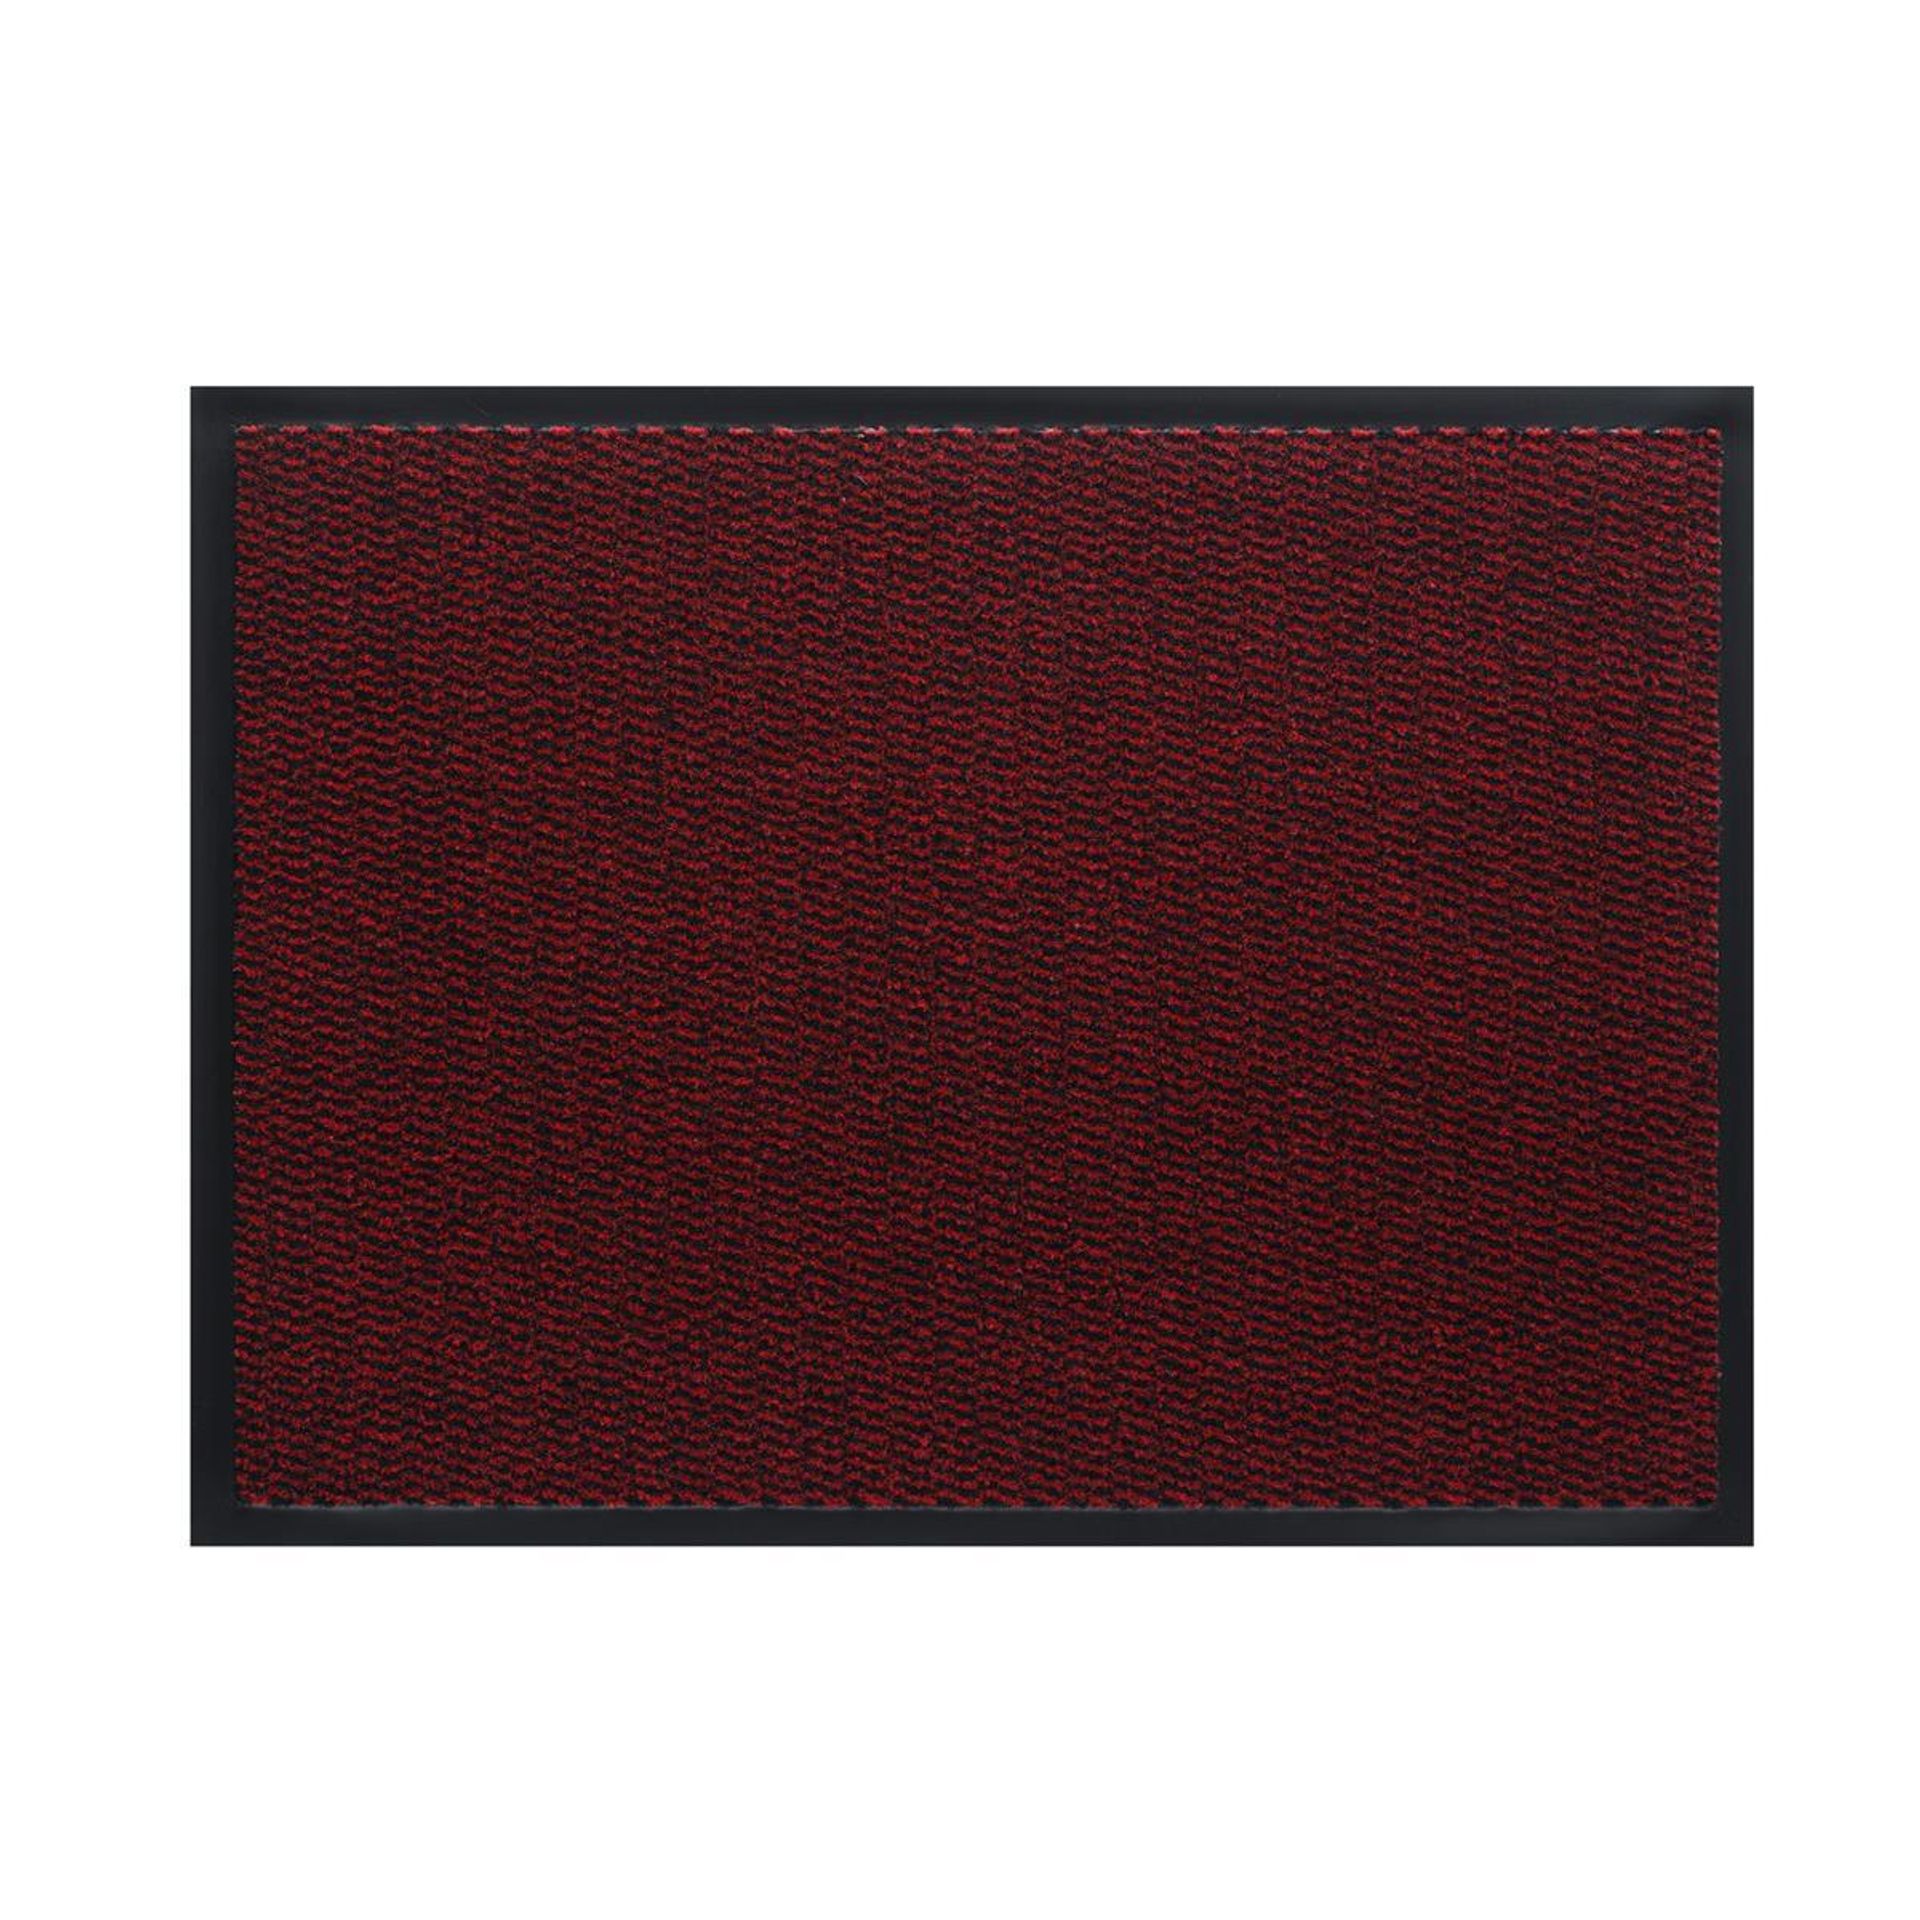 Sauberlauf Innen Spectrum 001 red - Rollenbreite 90 cm